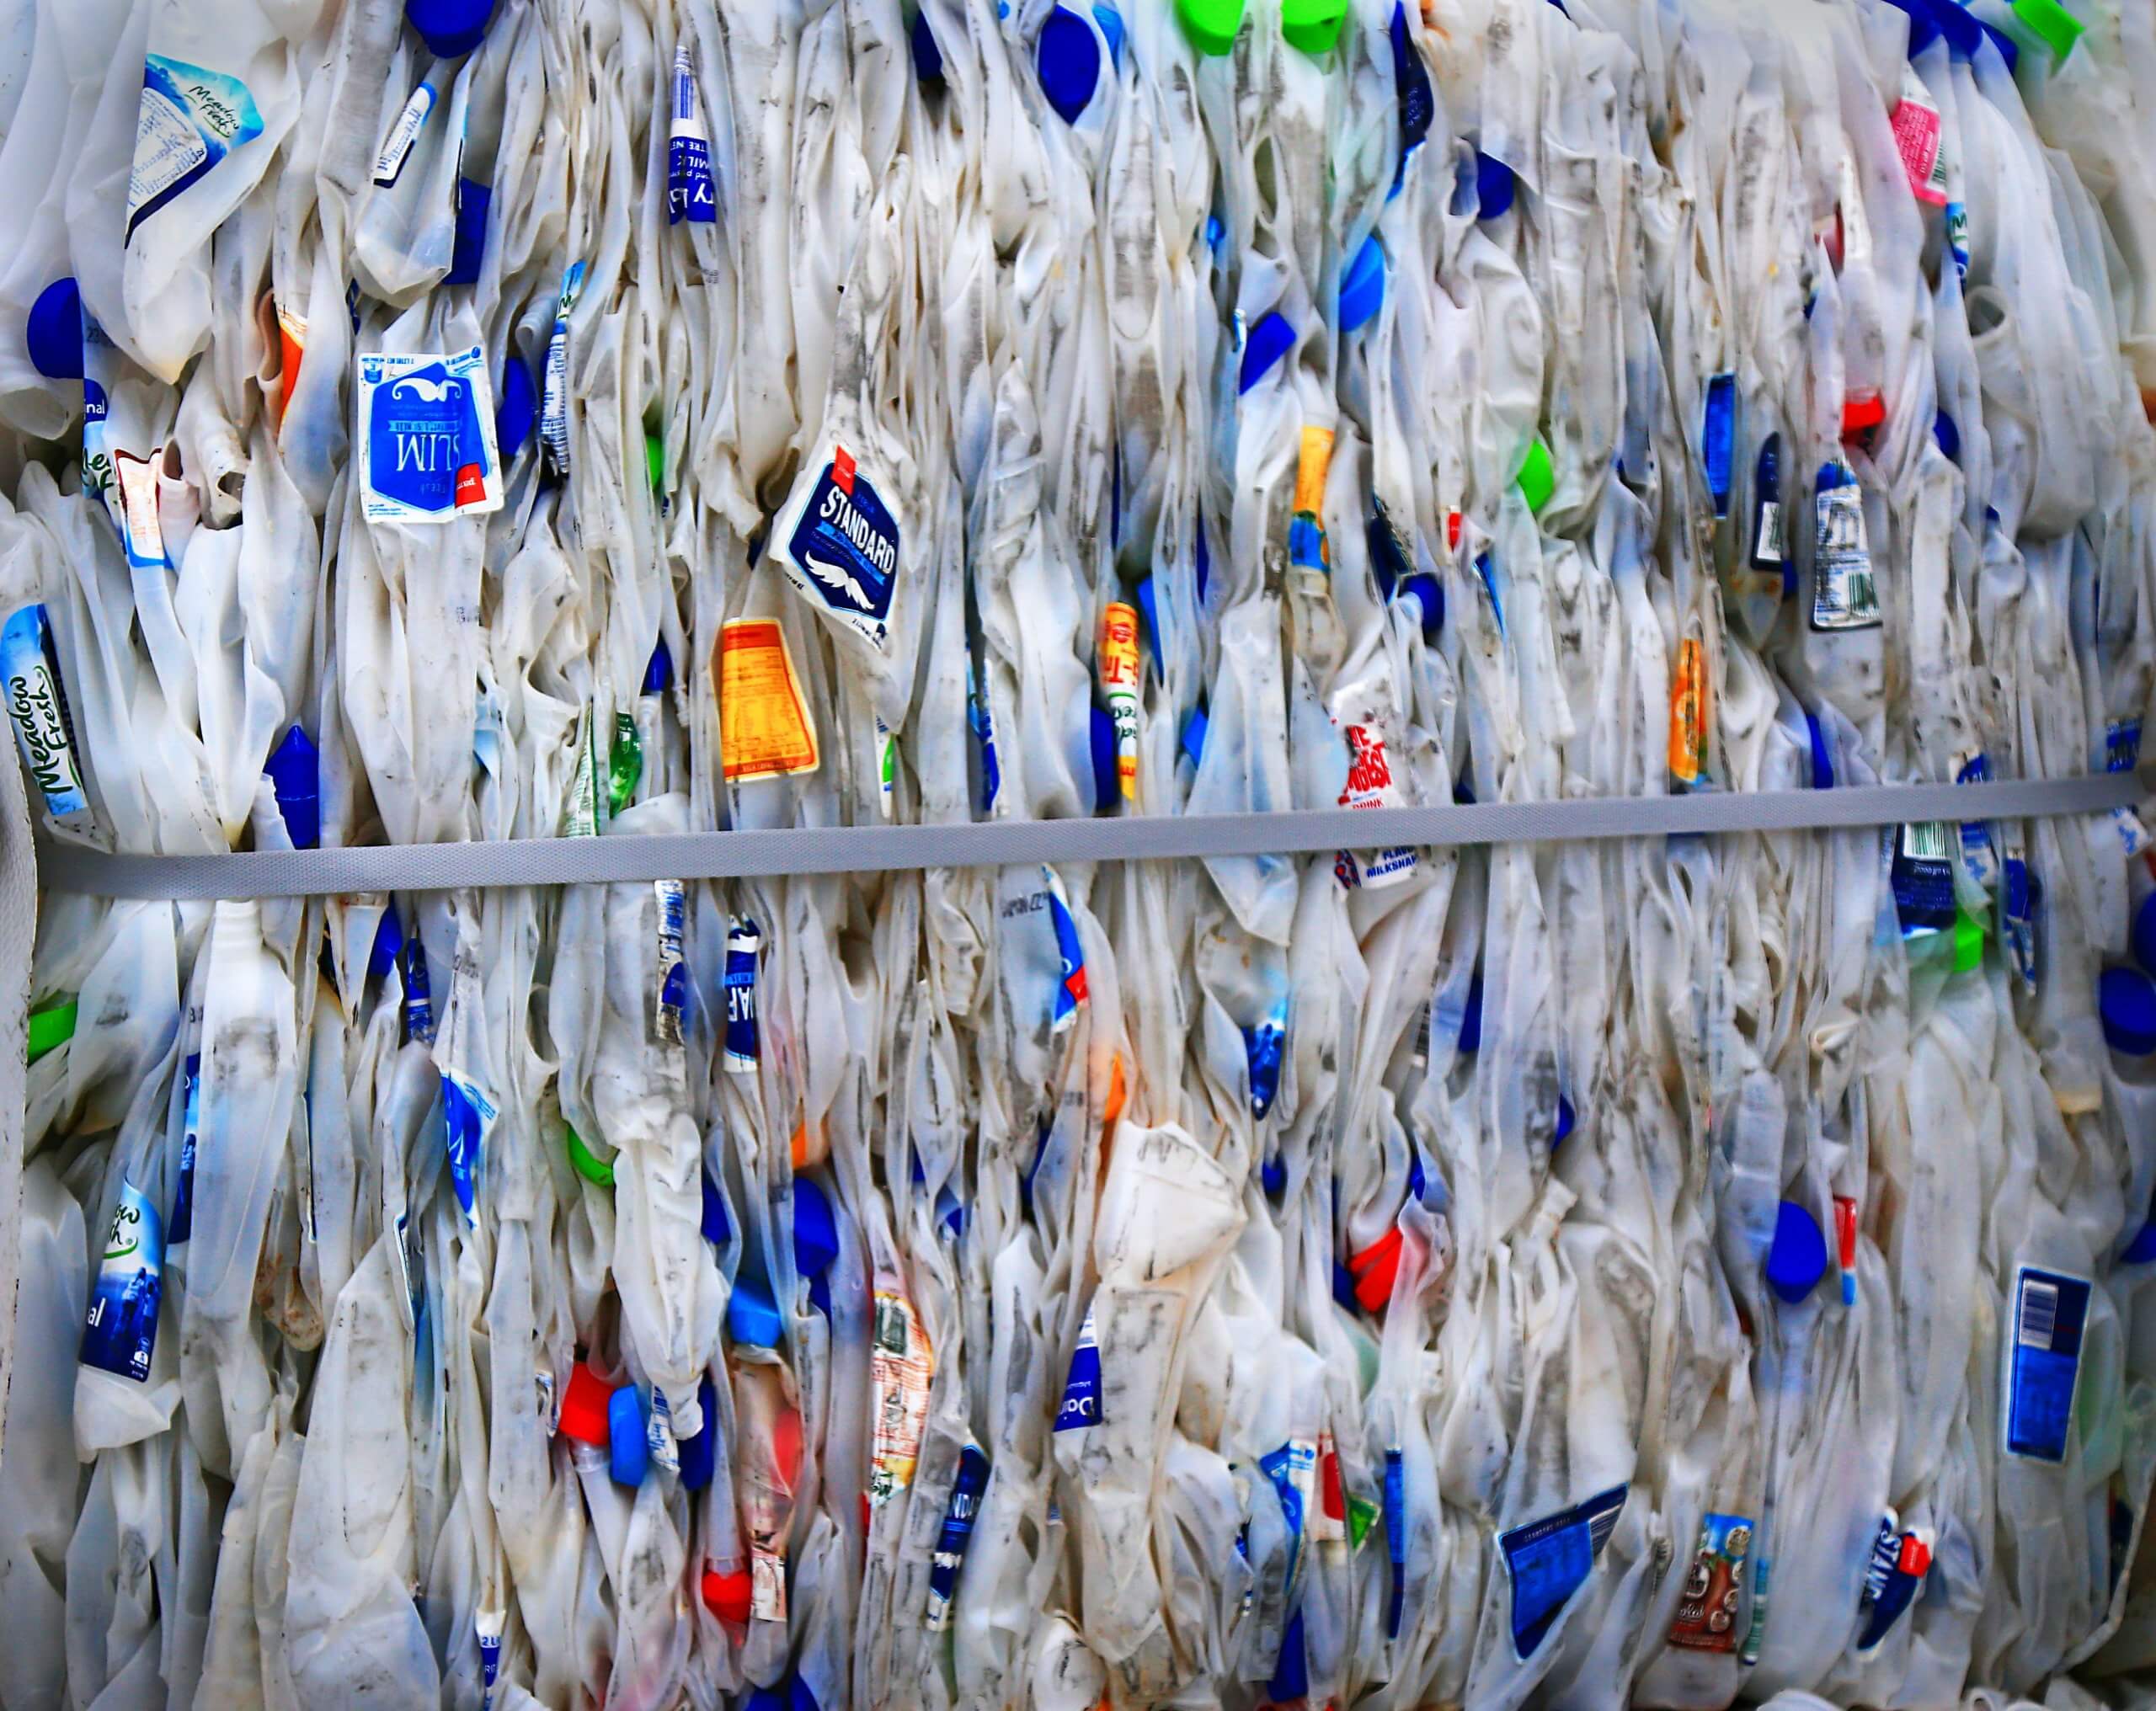 ישראל מייצרת 1.37 מיליון טון פסולת פלסטיק בשנה; היקפי המיחזור שלנו מדדים מאחורי המספרים העצומים הללו. Photo by Nareeta Martin on Unsplash